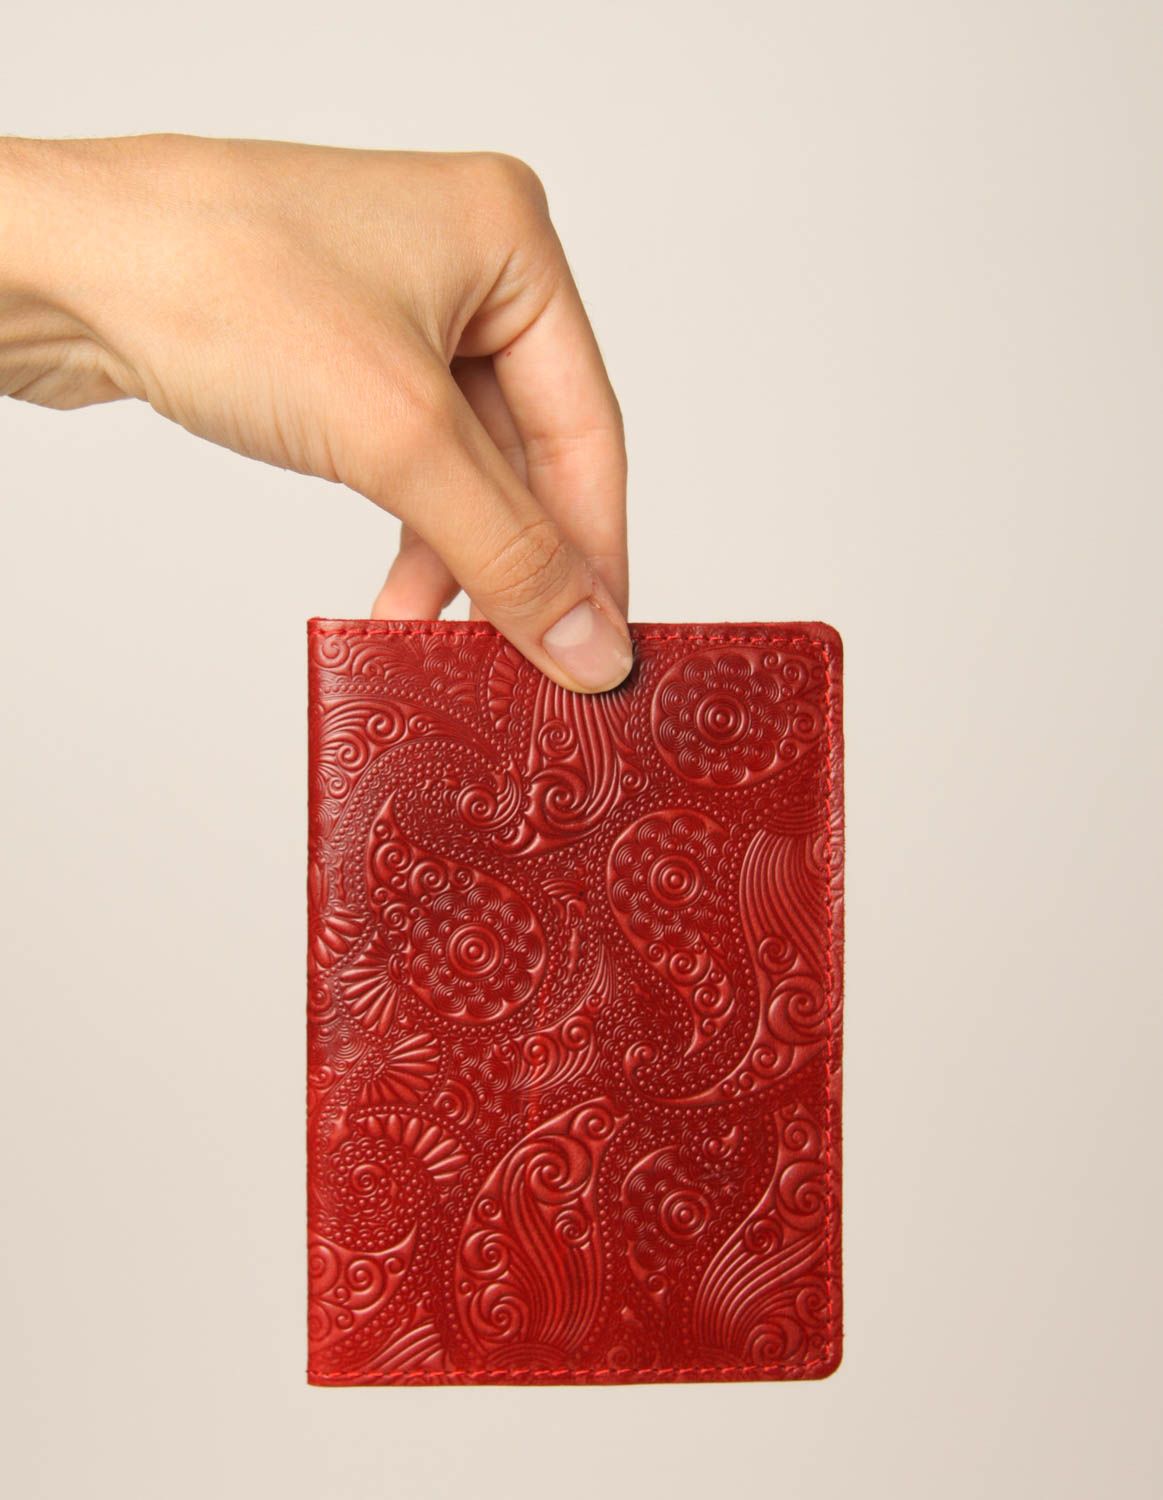 Оригинальный подарок хенд мейд аксессуар из кожи красная обложка на паспорт фото 2